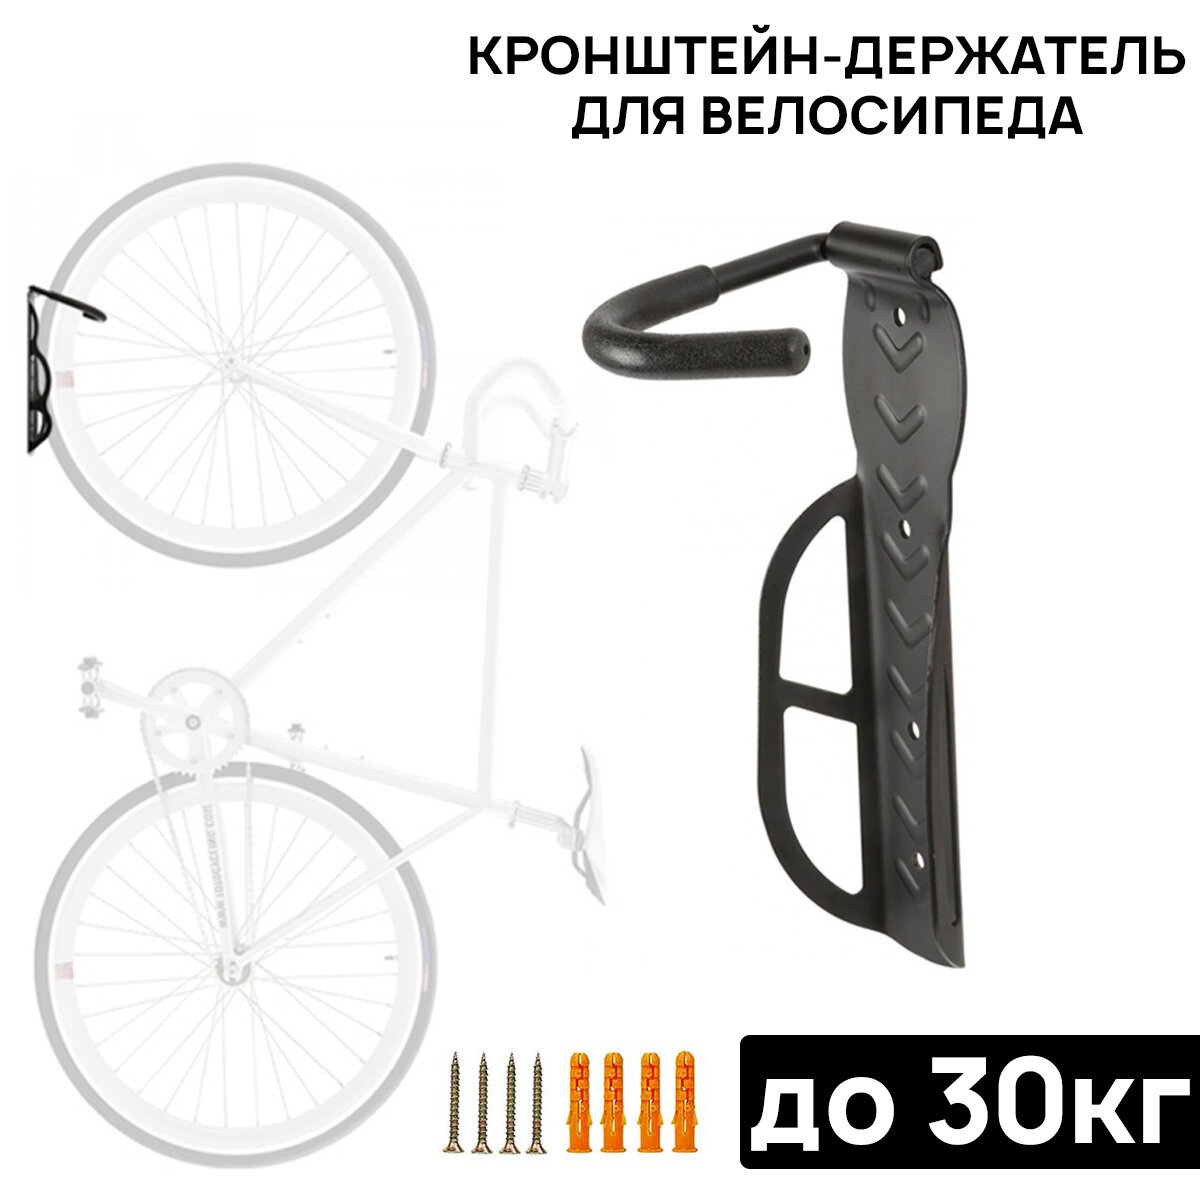 Кронштейн-держатель для велосипеда ARISTO DFT-20 крепление за колесо не складной стальной чёрный